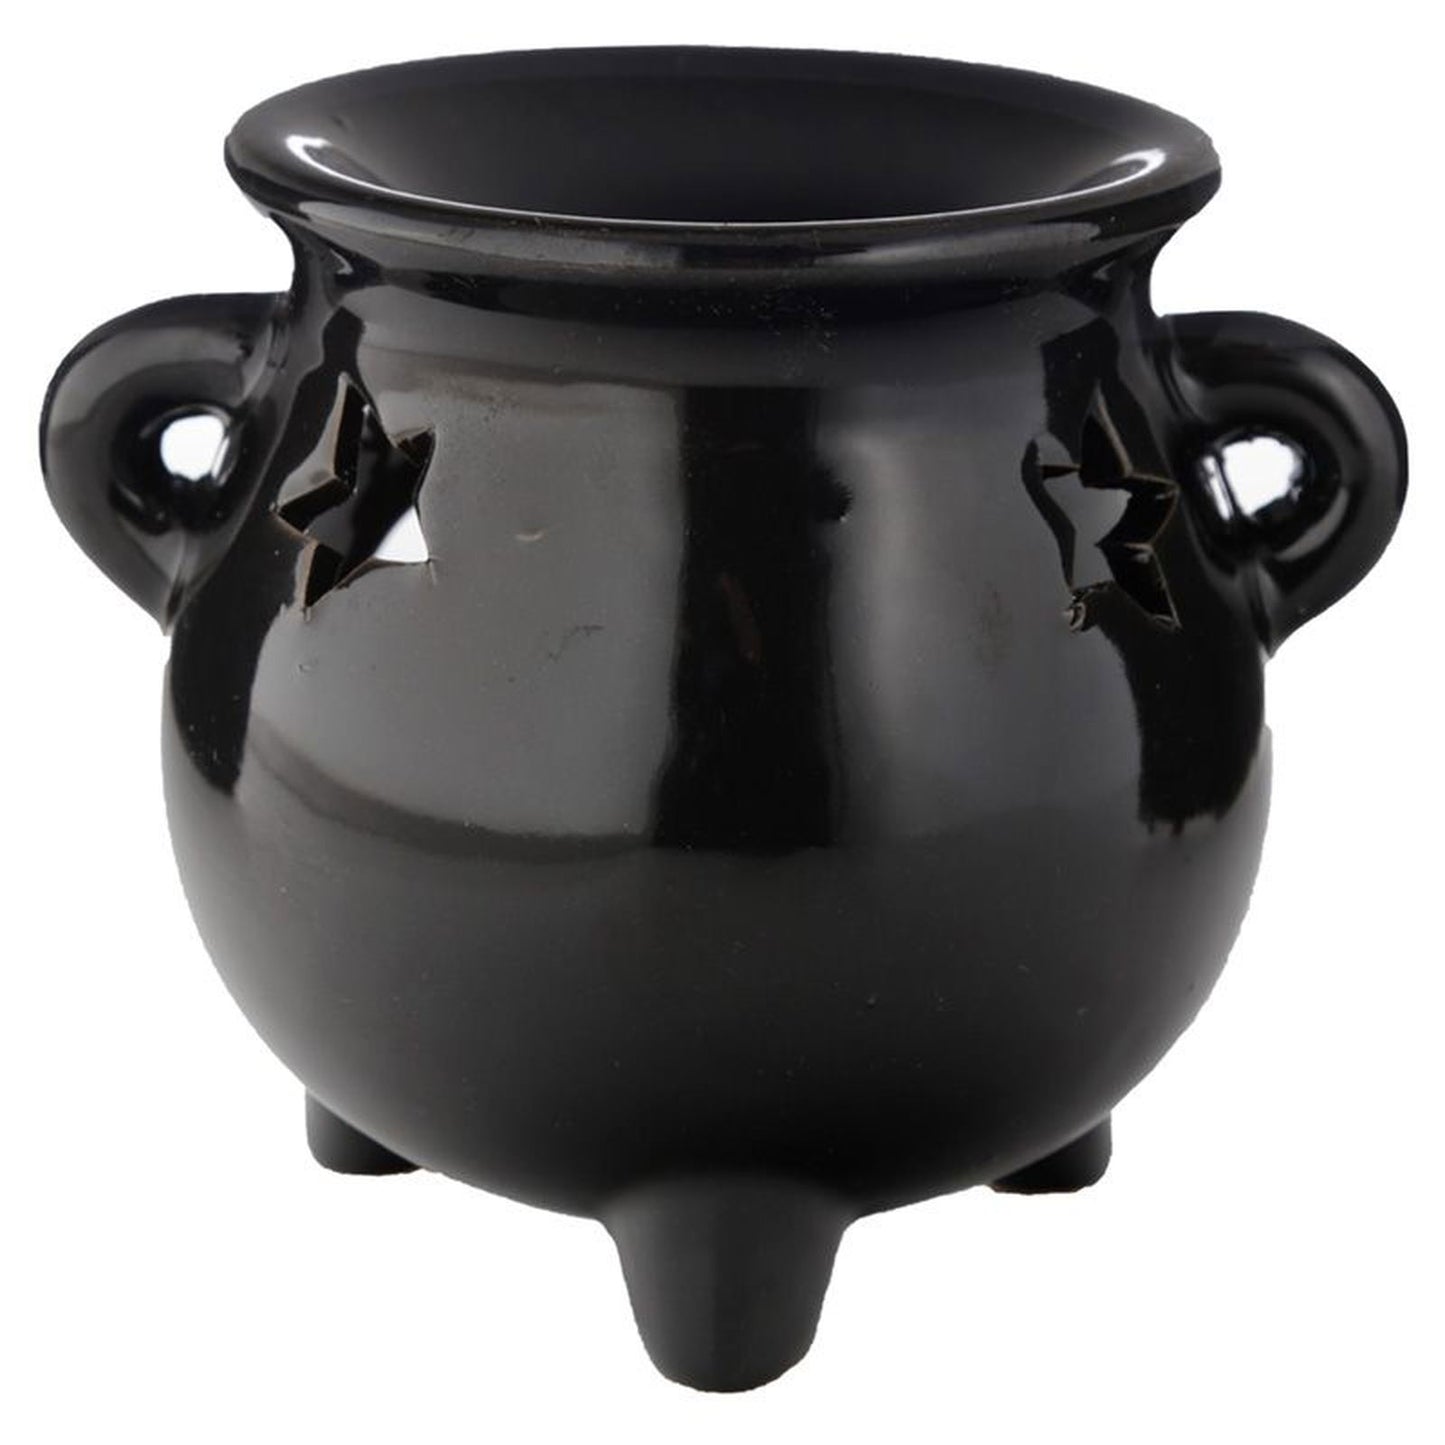 Large Black Cauldron Wax Warmer / Oil Burner - D SCENT 